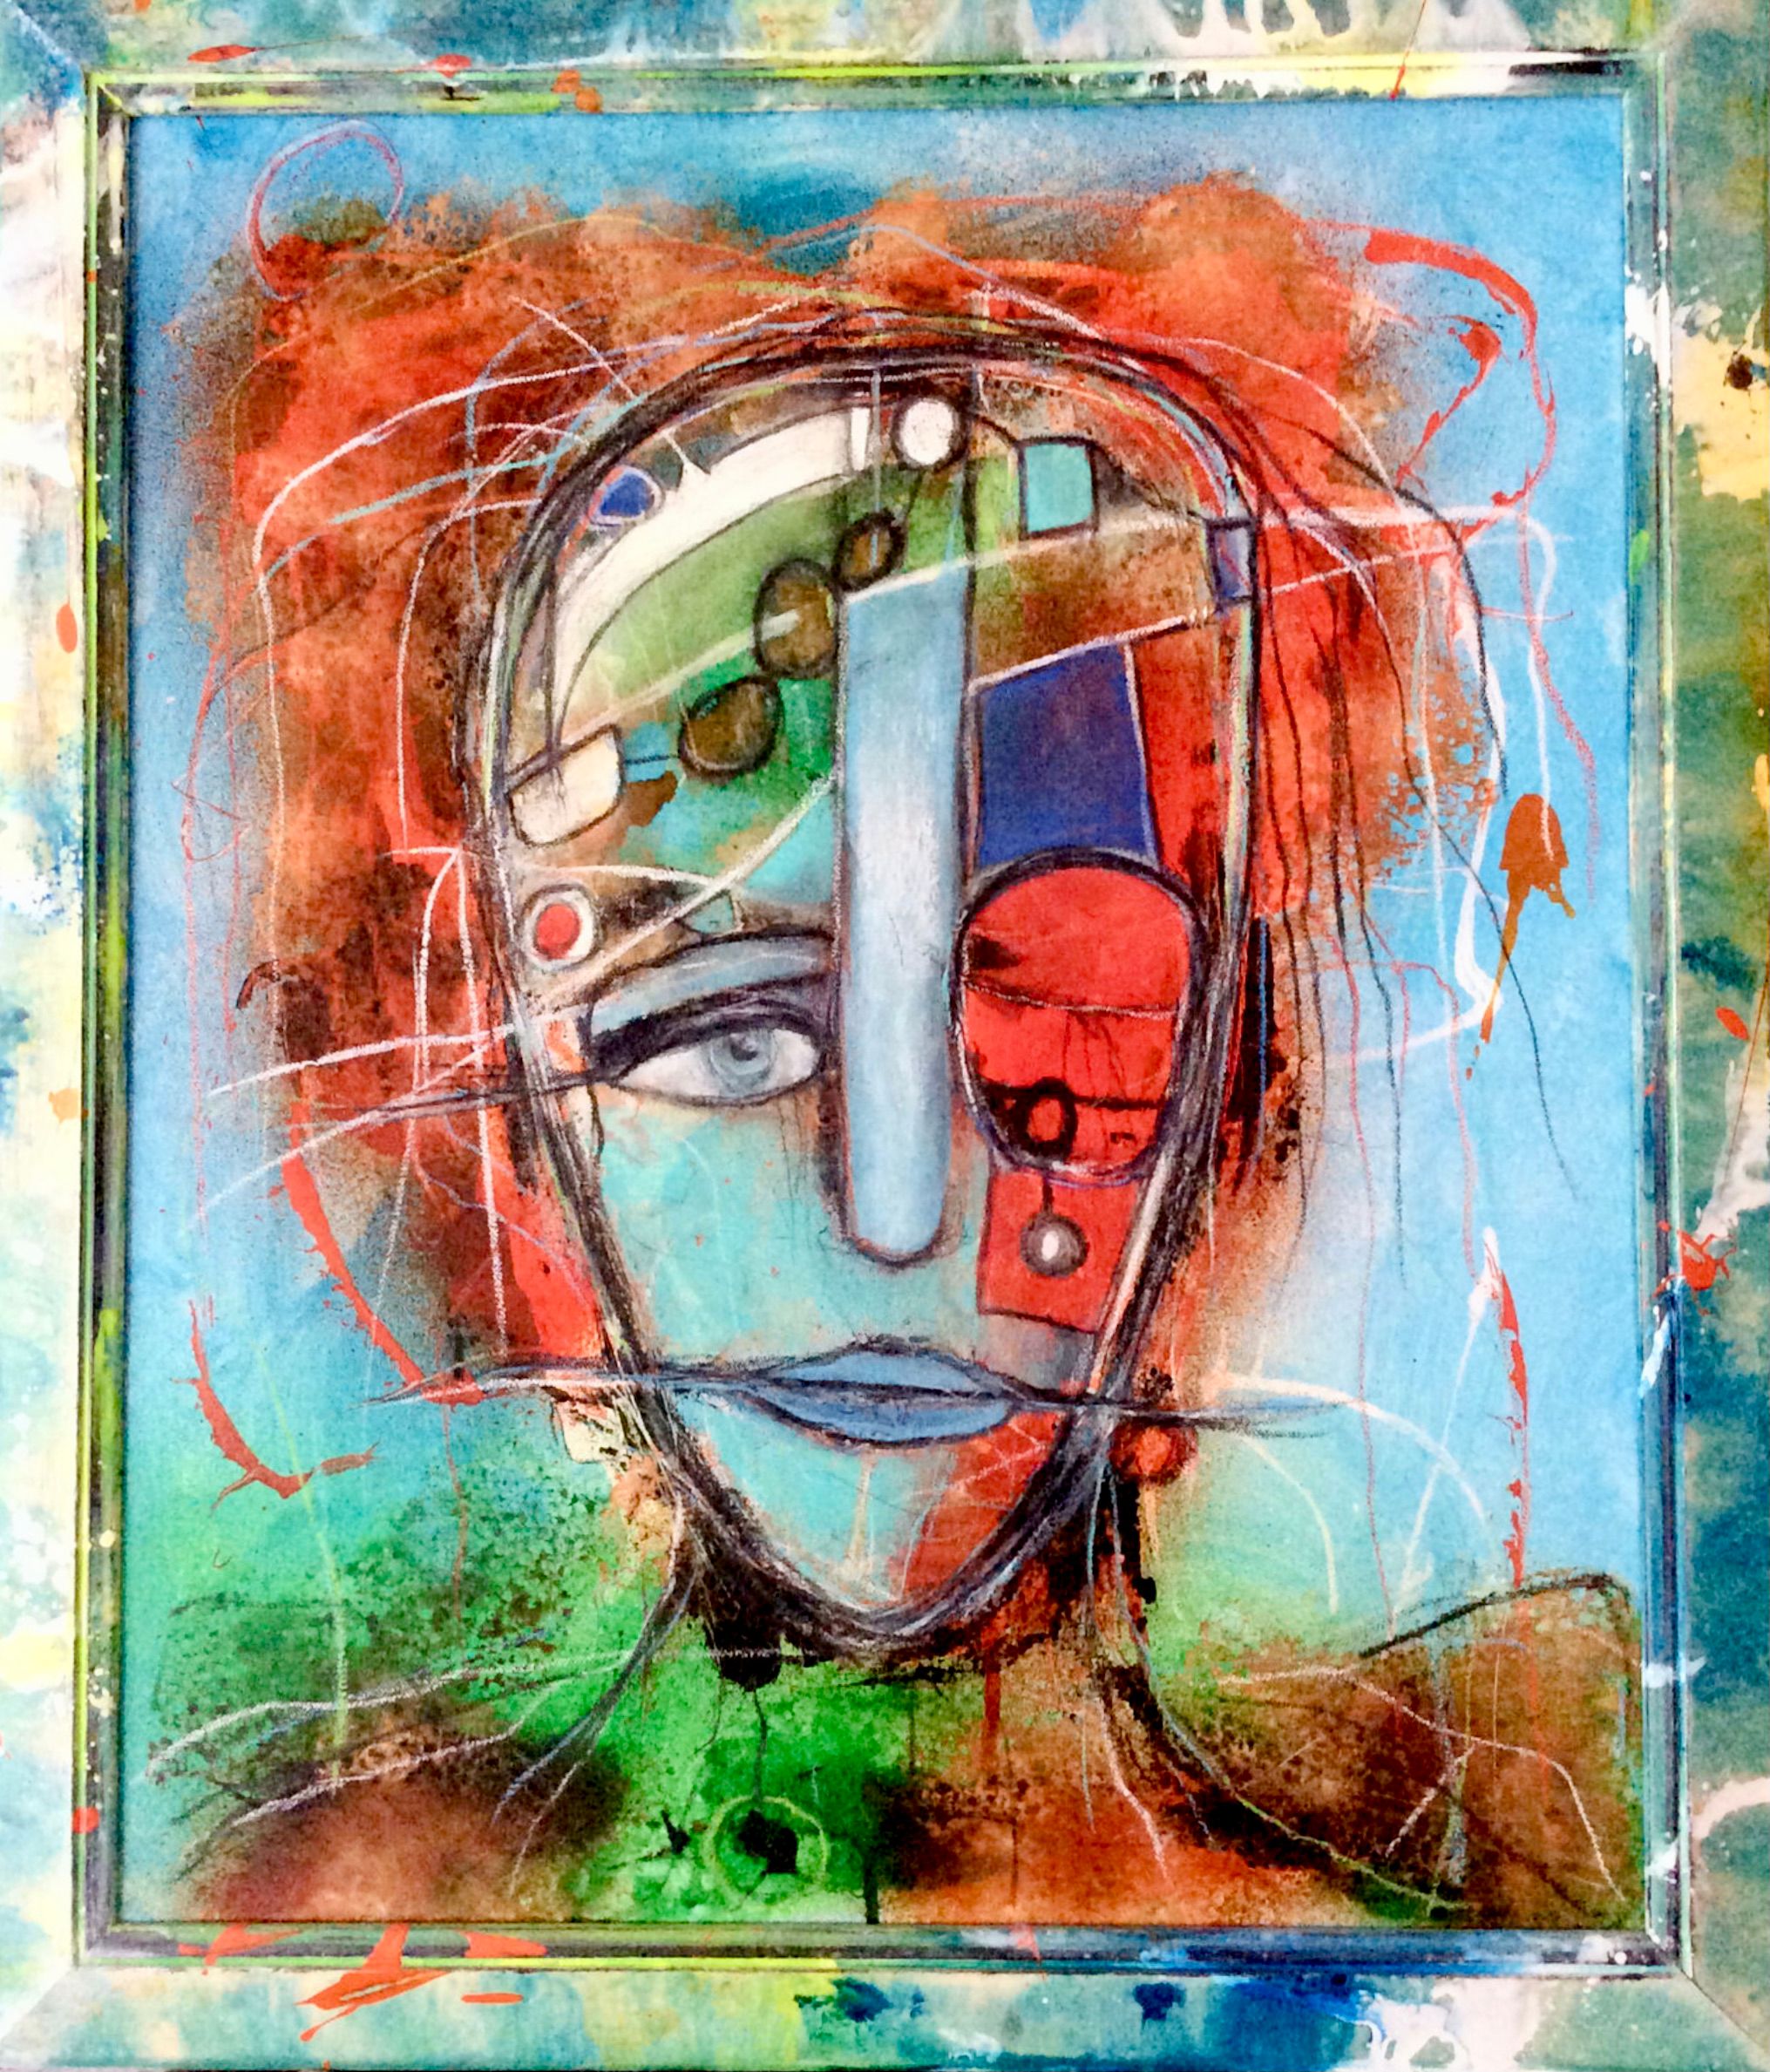 Il ritratto semi-astratto ed espressivo "Firewall" di Ilona Schmidt mostra un volto di donna. L'uomo è al centro della digitalizzazione. I colori rosso, arancione, turchese, verde e blu dominano questo dipinto.